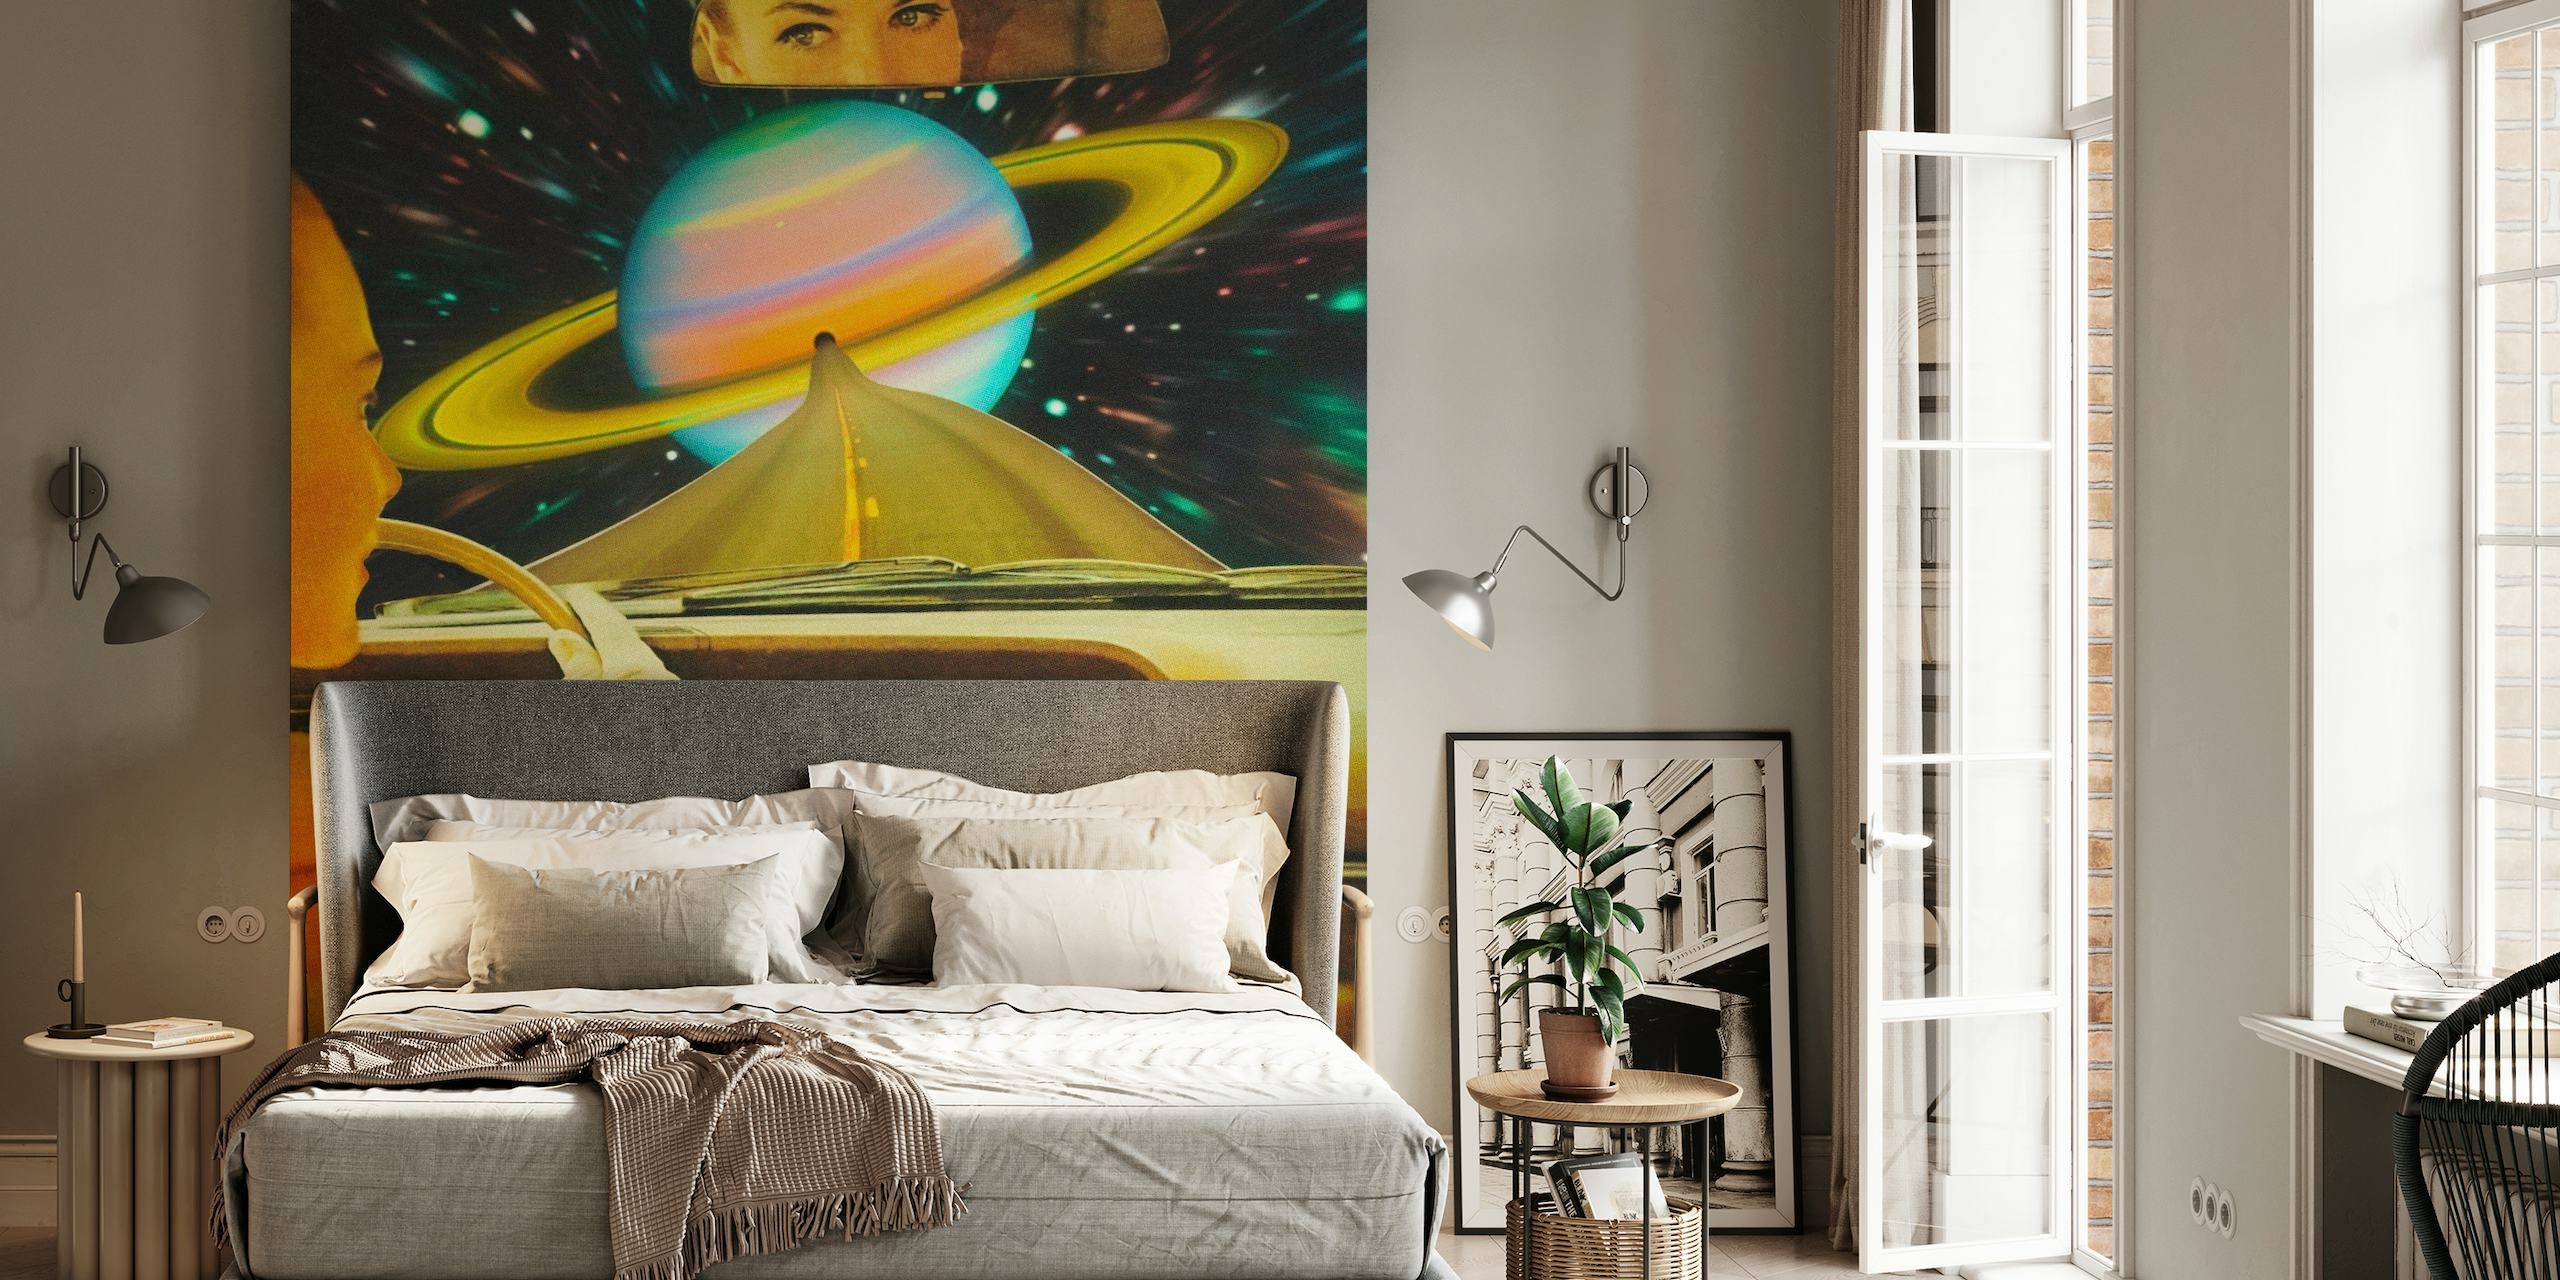 Oldtimer-Interieur mit Blick auf Saturn und die Sterne in kosmischer Umgebung